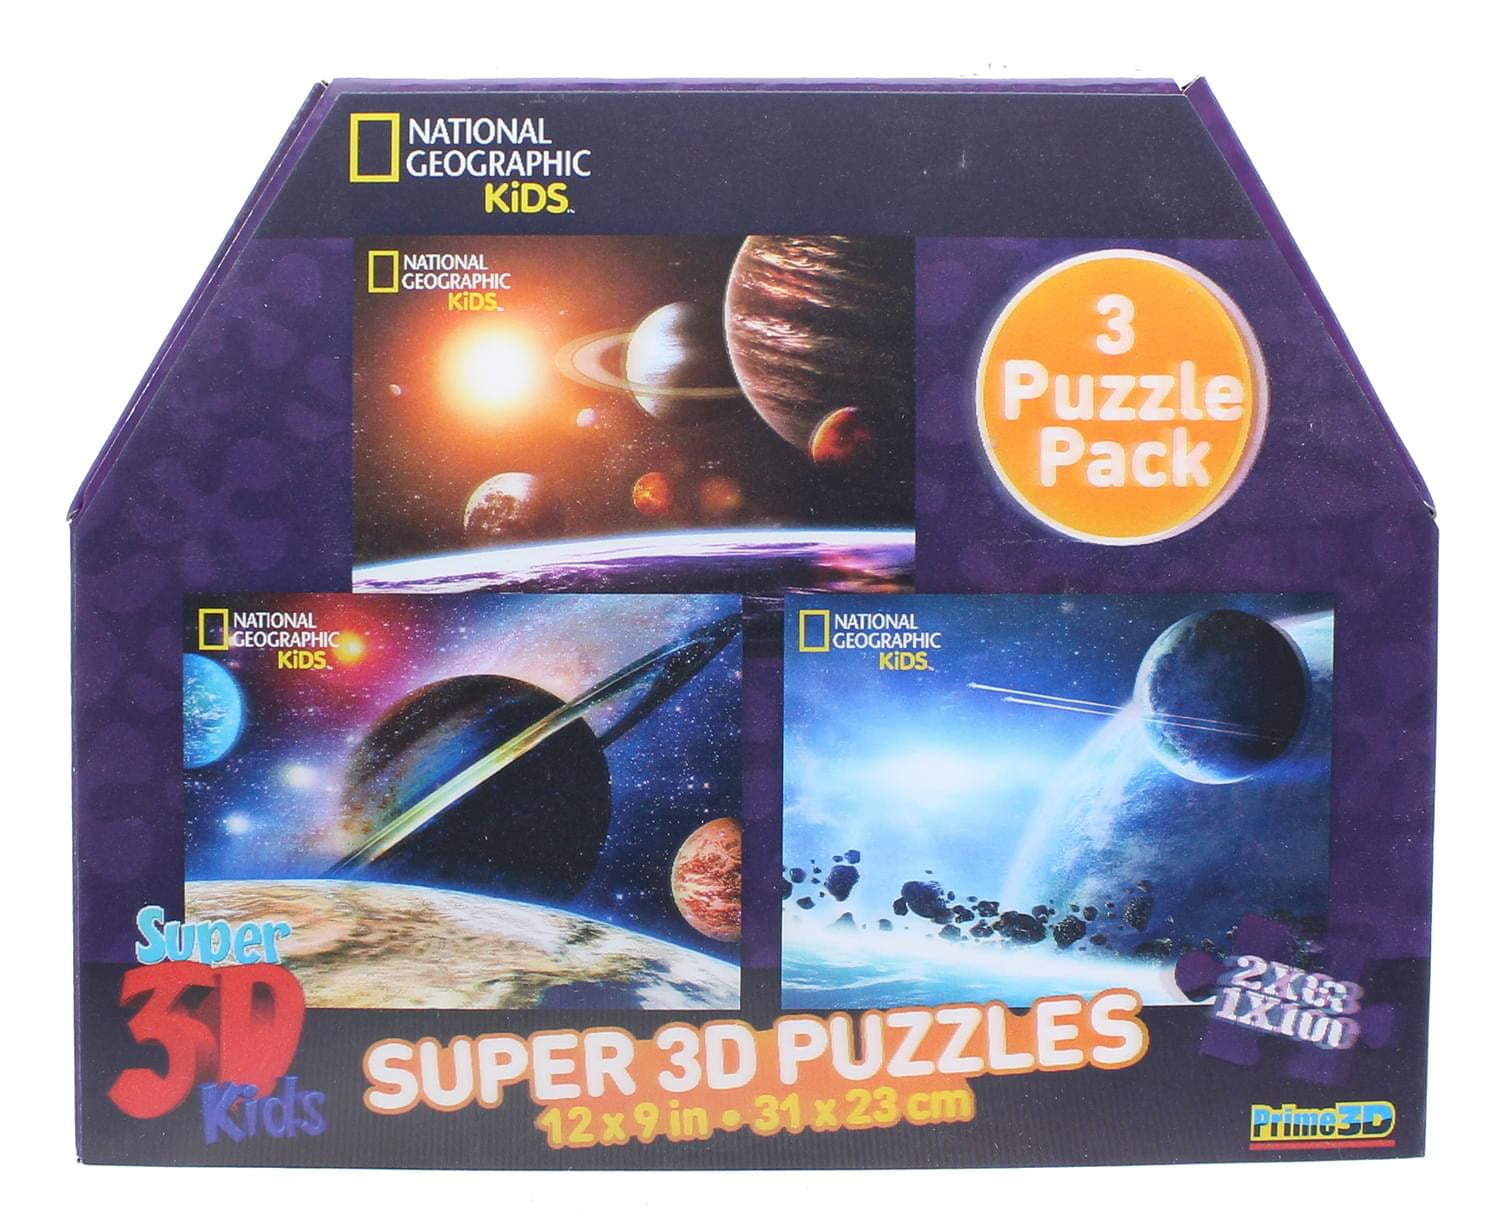 Super 3D jigsaw puzzles national geographic kids educational cerveau esprit teaser 